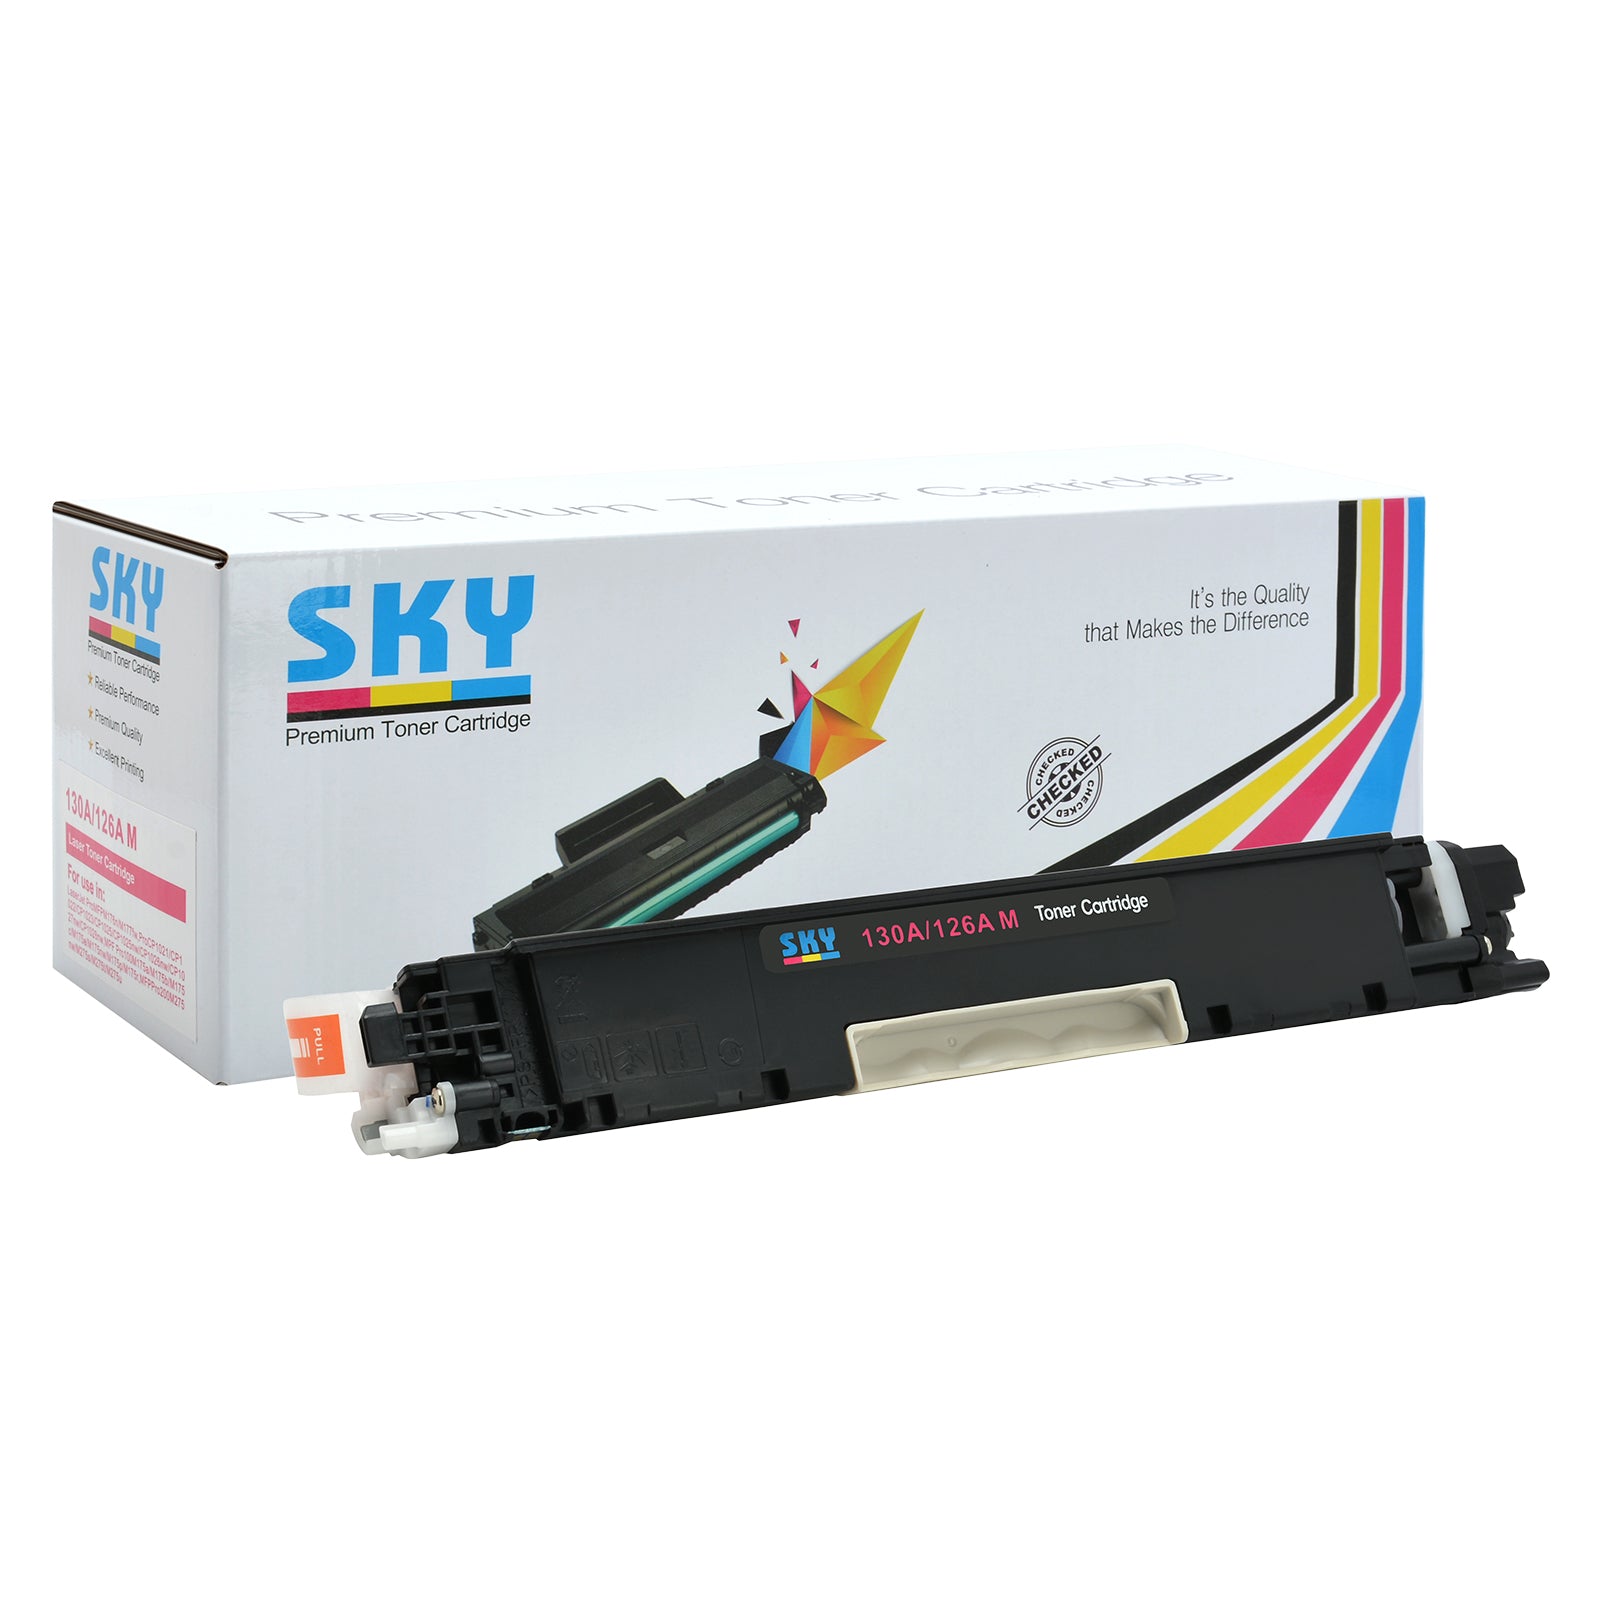 SKY 130A Compatible Toner Cartridges for HP Colour LaserJet Pro MFP M176/MFP M177